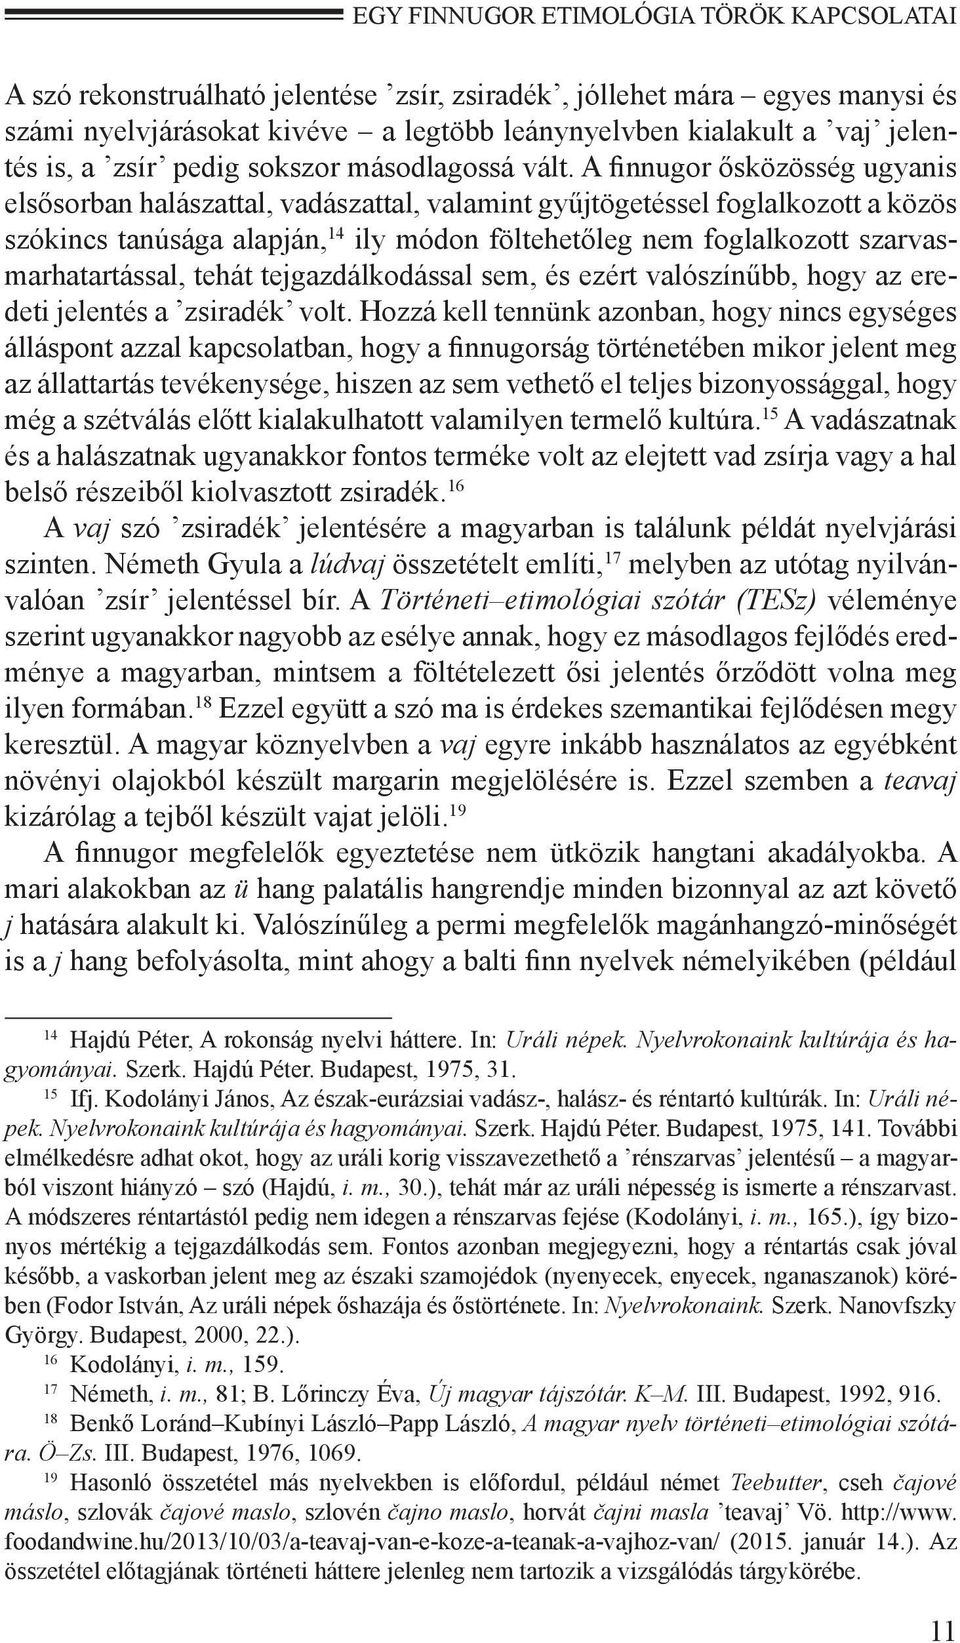 A finnugor ősközösség ugyanis elsősorban halászattal, vadászattal, valamint gyűjtögetéssel foglalkozott a közös szókincs tanúsága alapján, 14 ily módon föltehetőleg nem foglalkozott